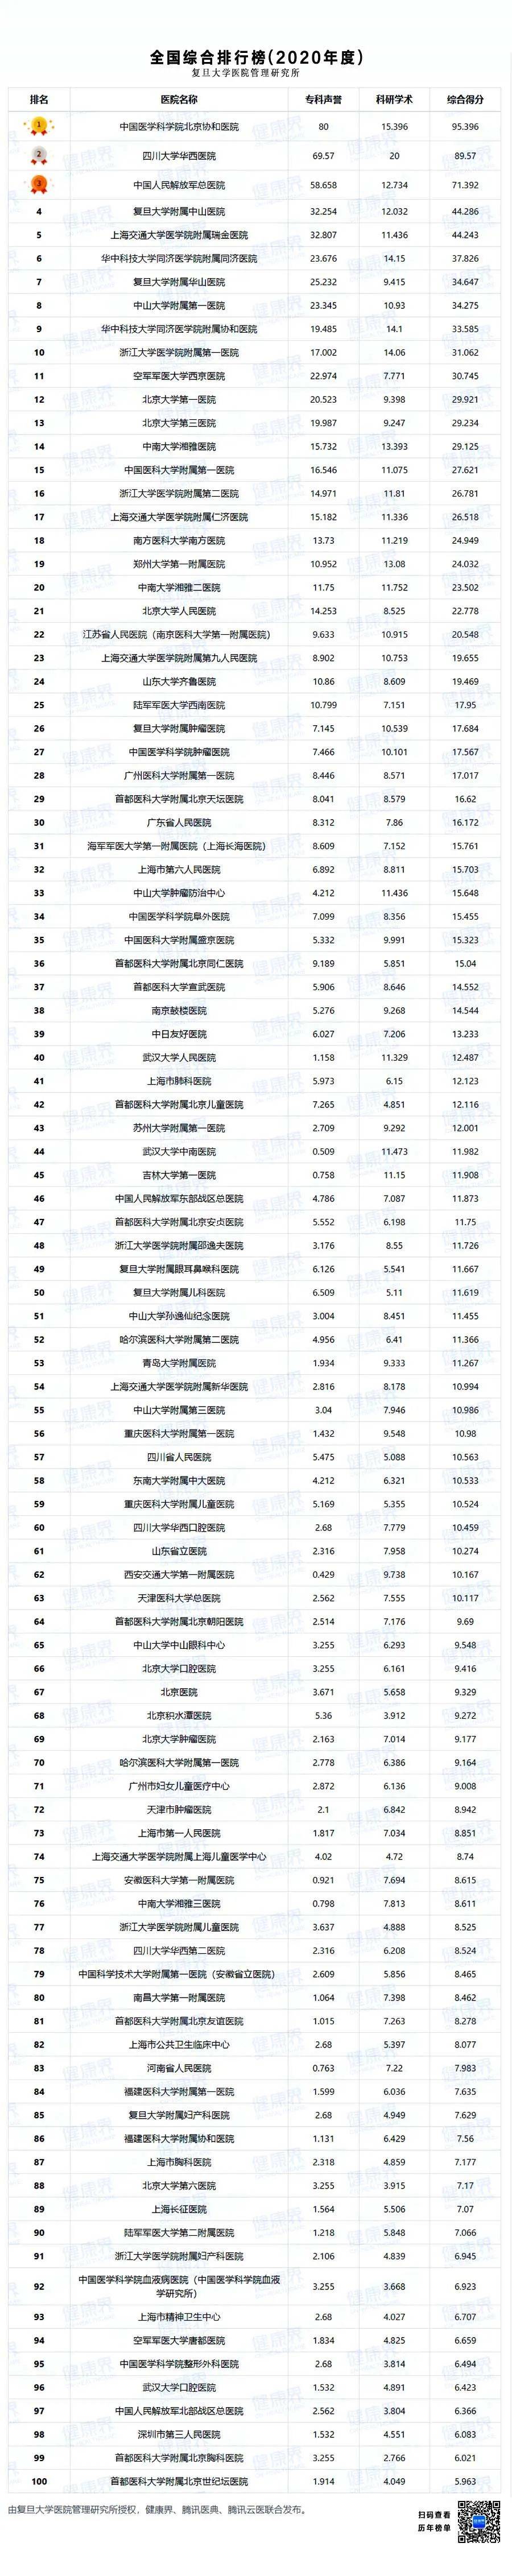 复旦版《2020年度中国医院综合排行榜》发布!